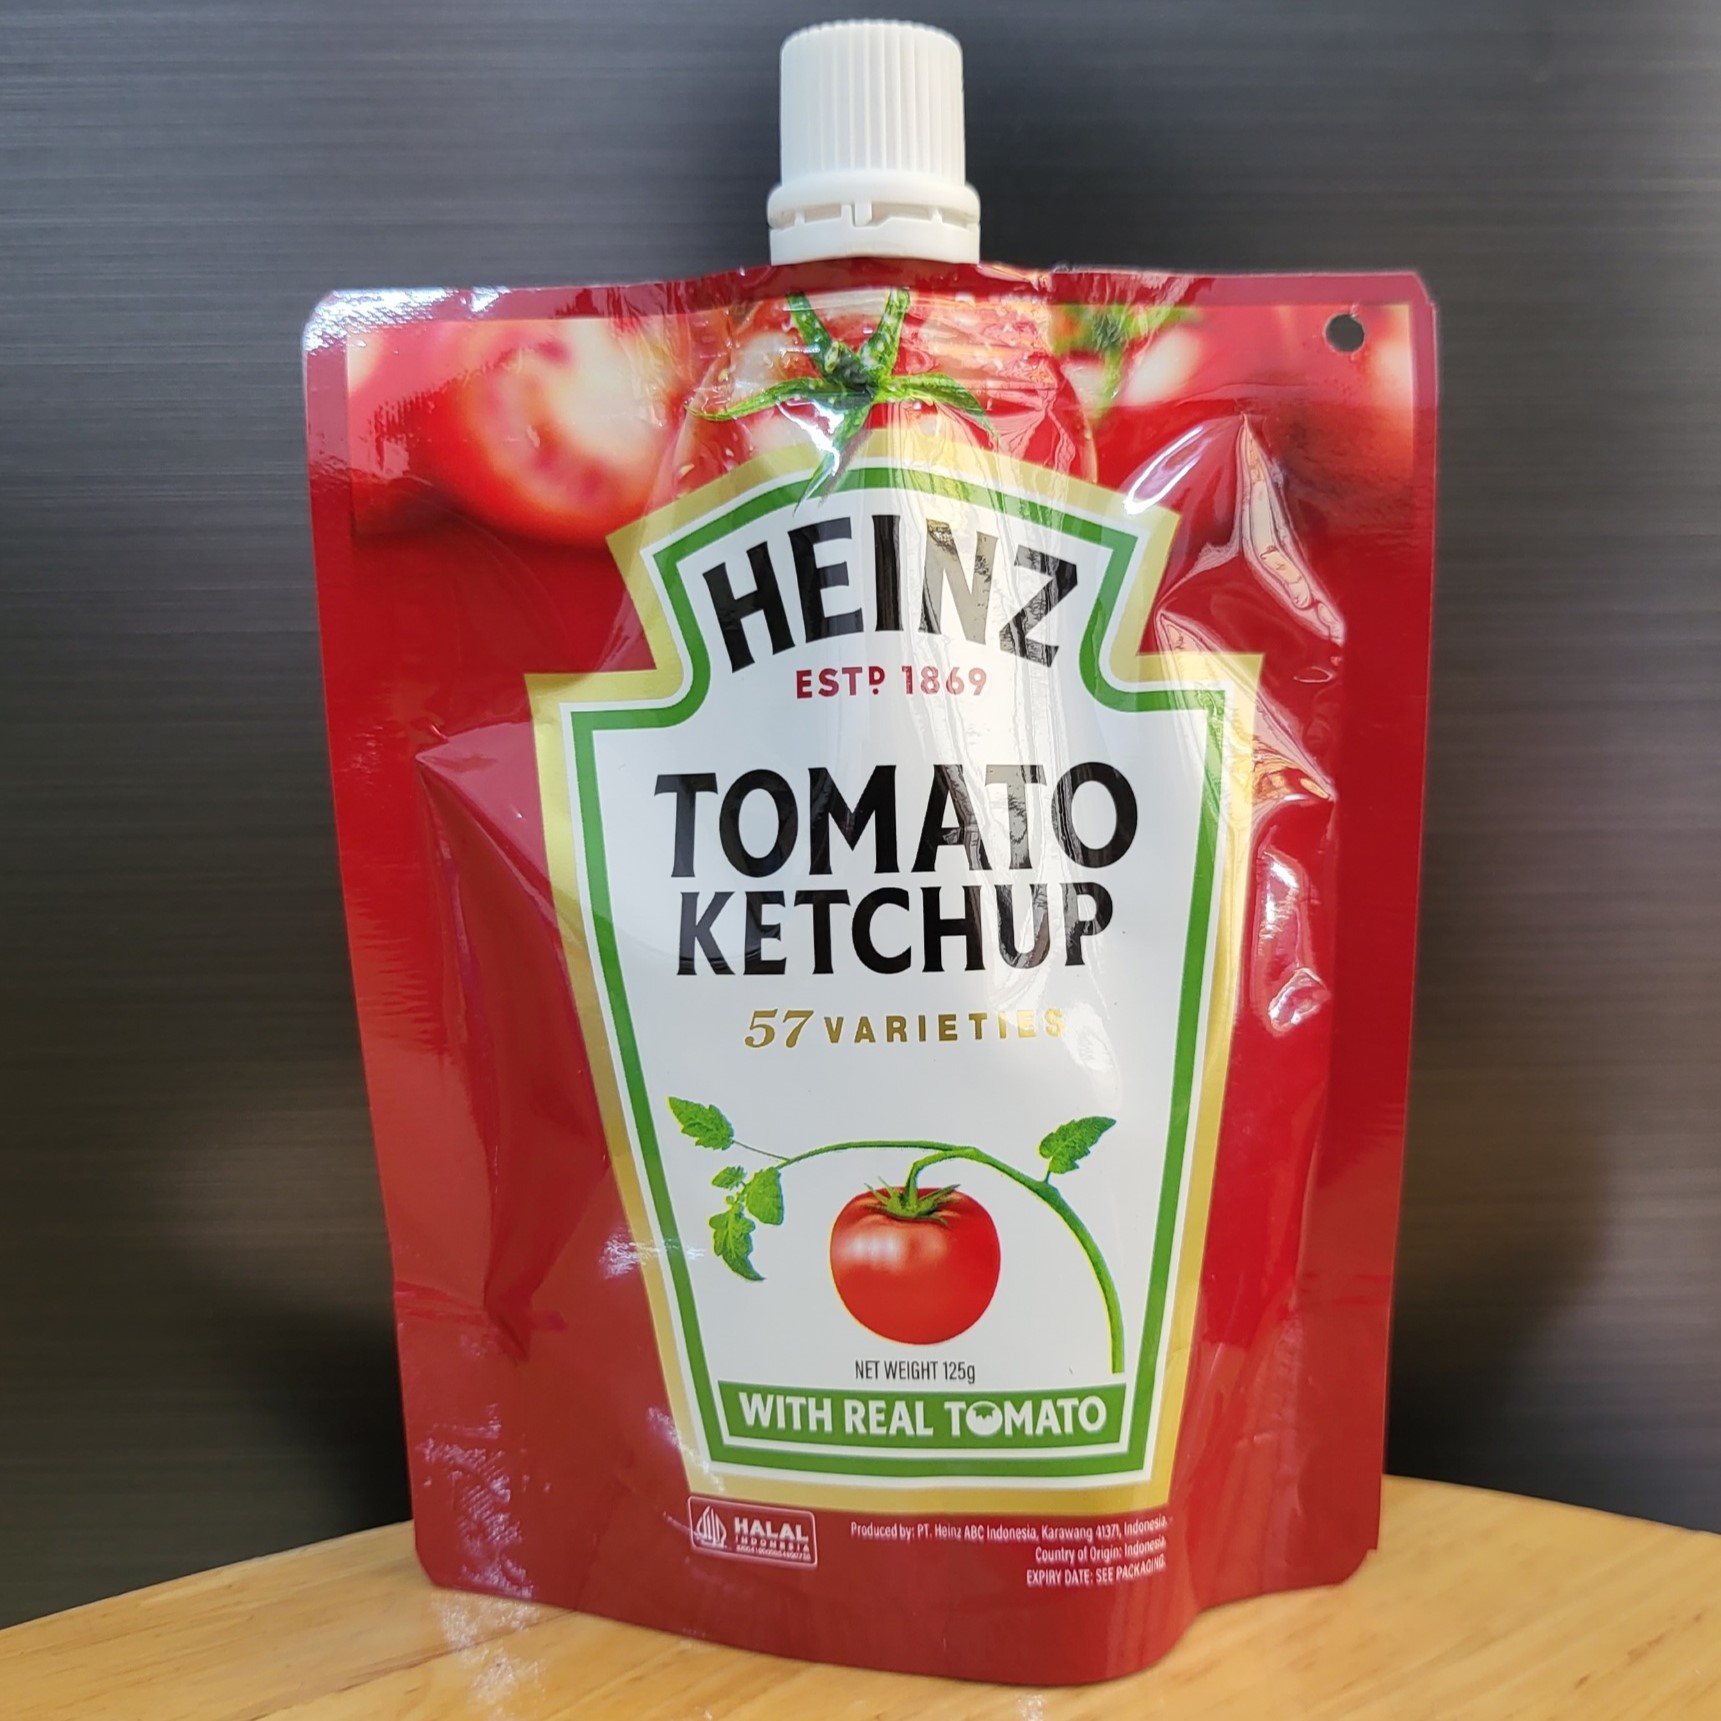 HEINZ - túi 125g - TƯƠNG CÀ CHUA INDONESIA Tomato Ketchup HALAL